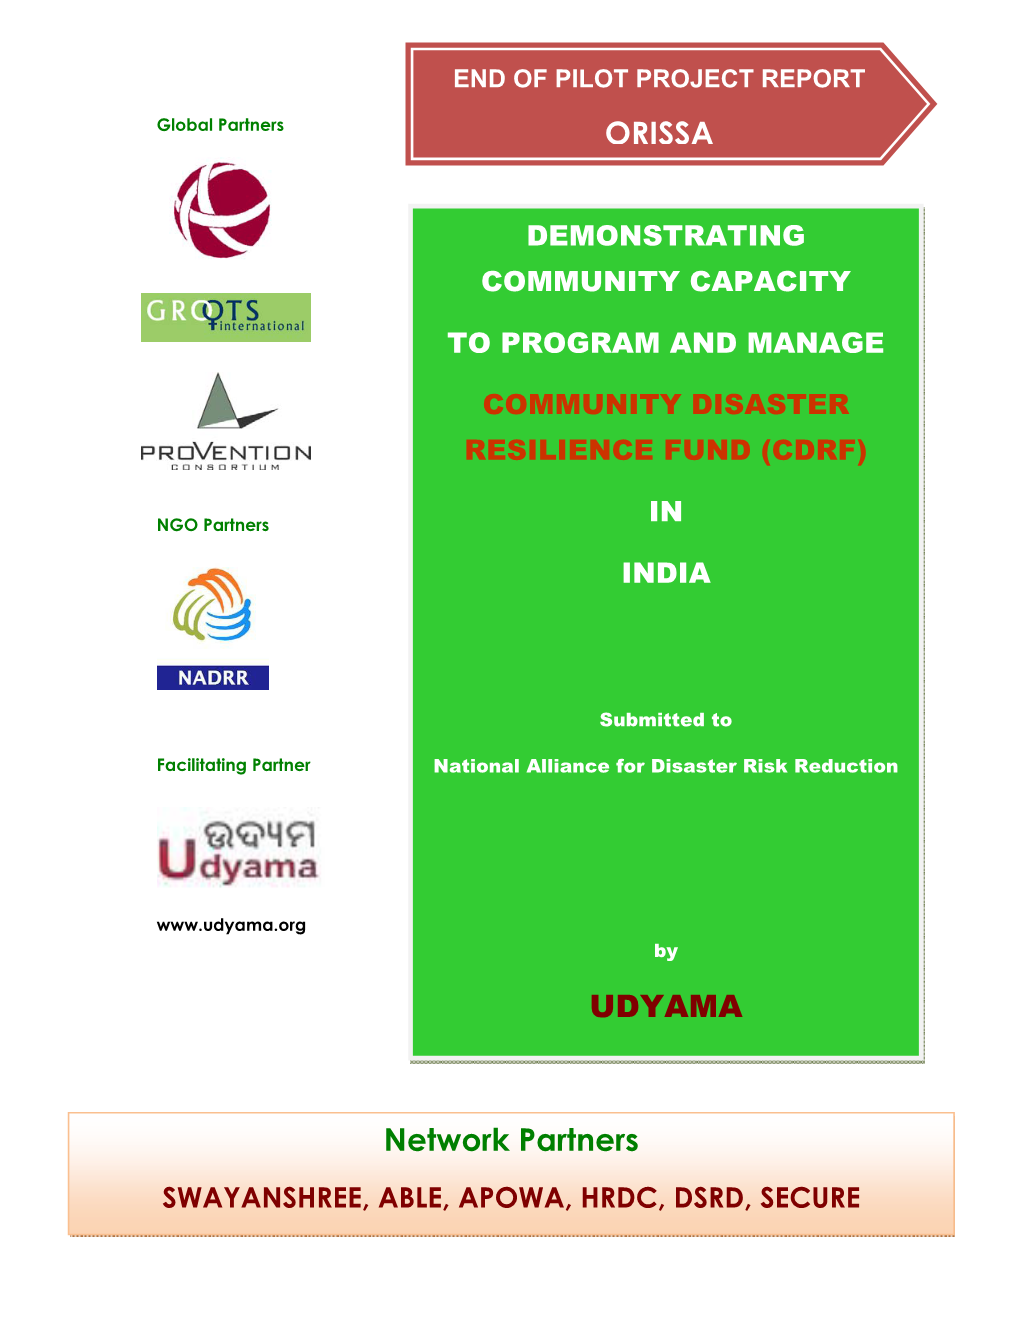 UDYAMA Network Partners ORISSA